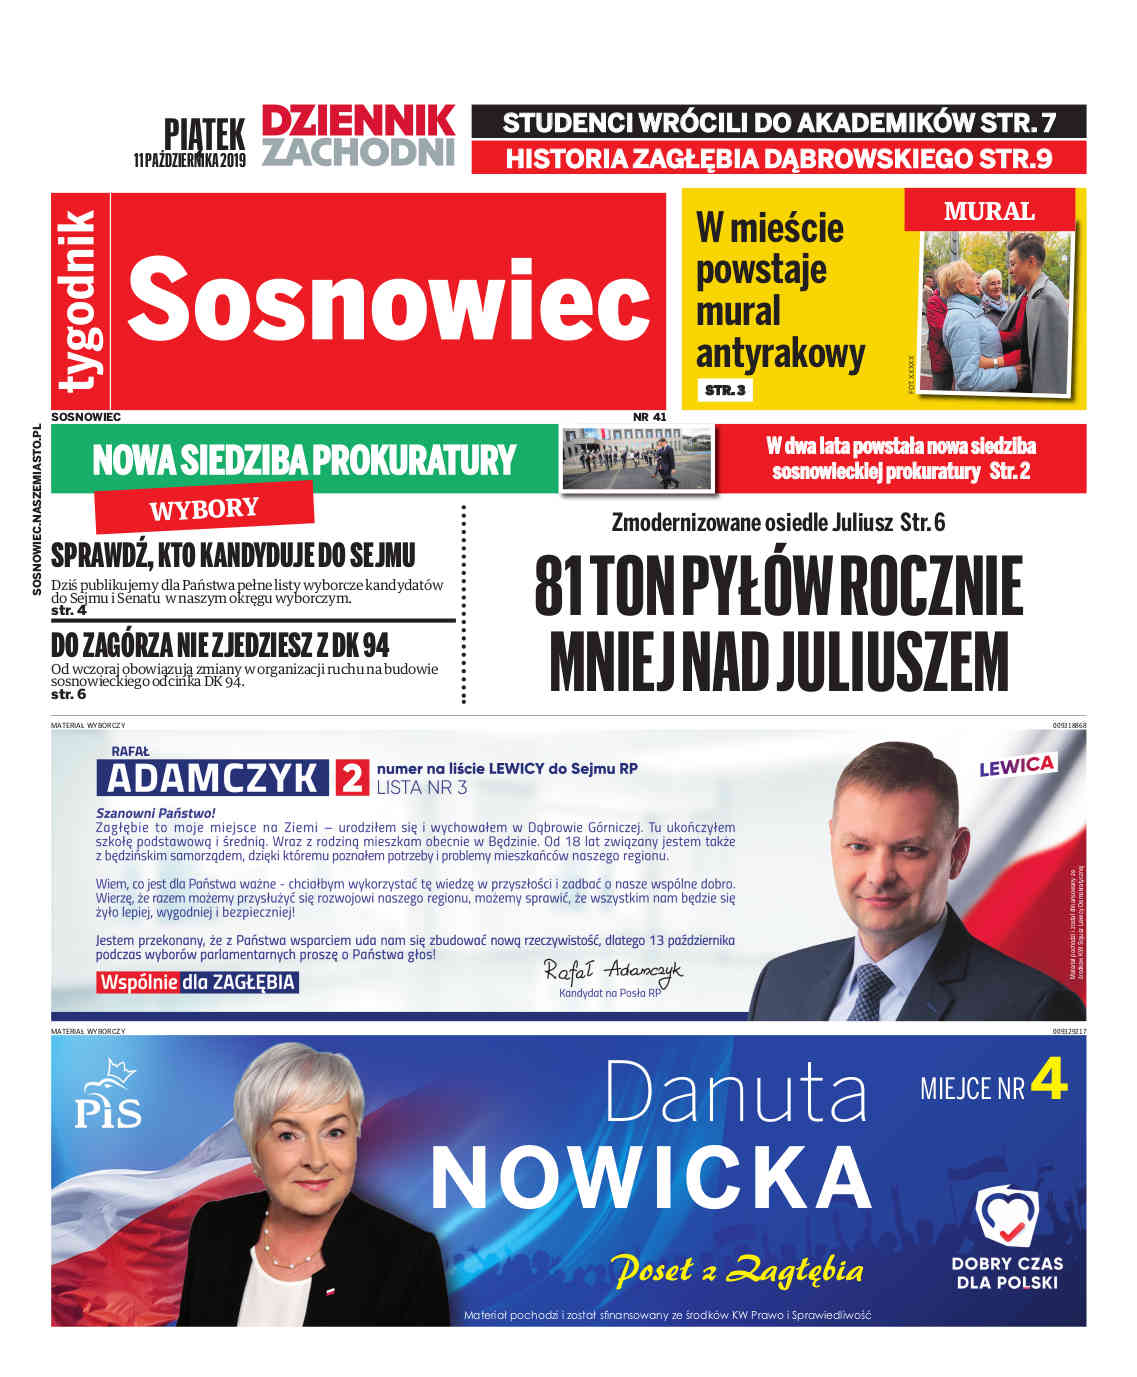 Polska Dziennik Zachodni - Sosnowiec 